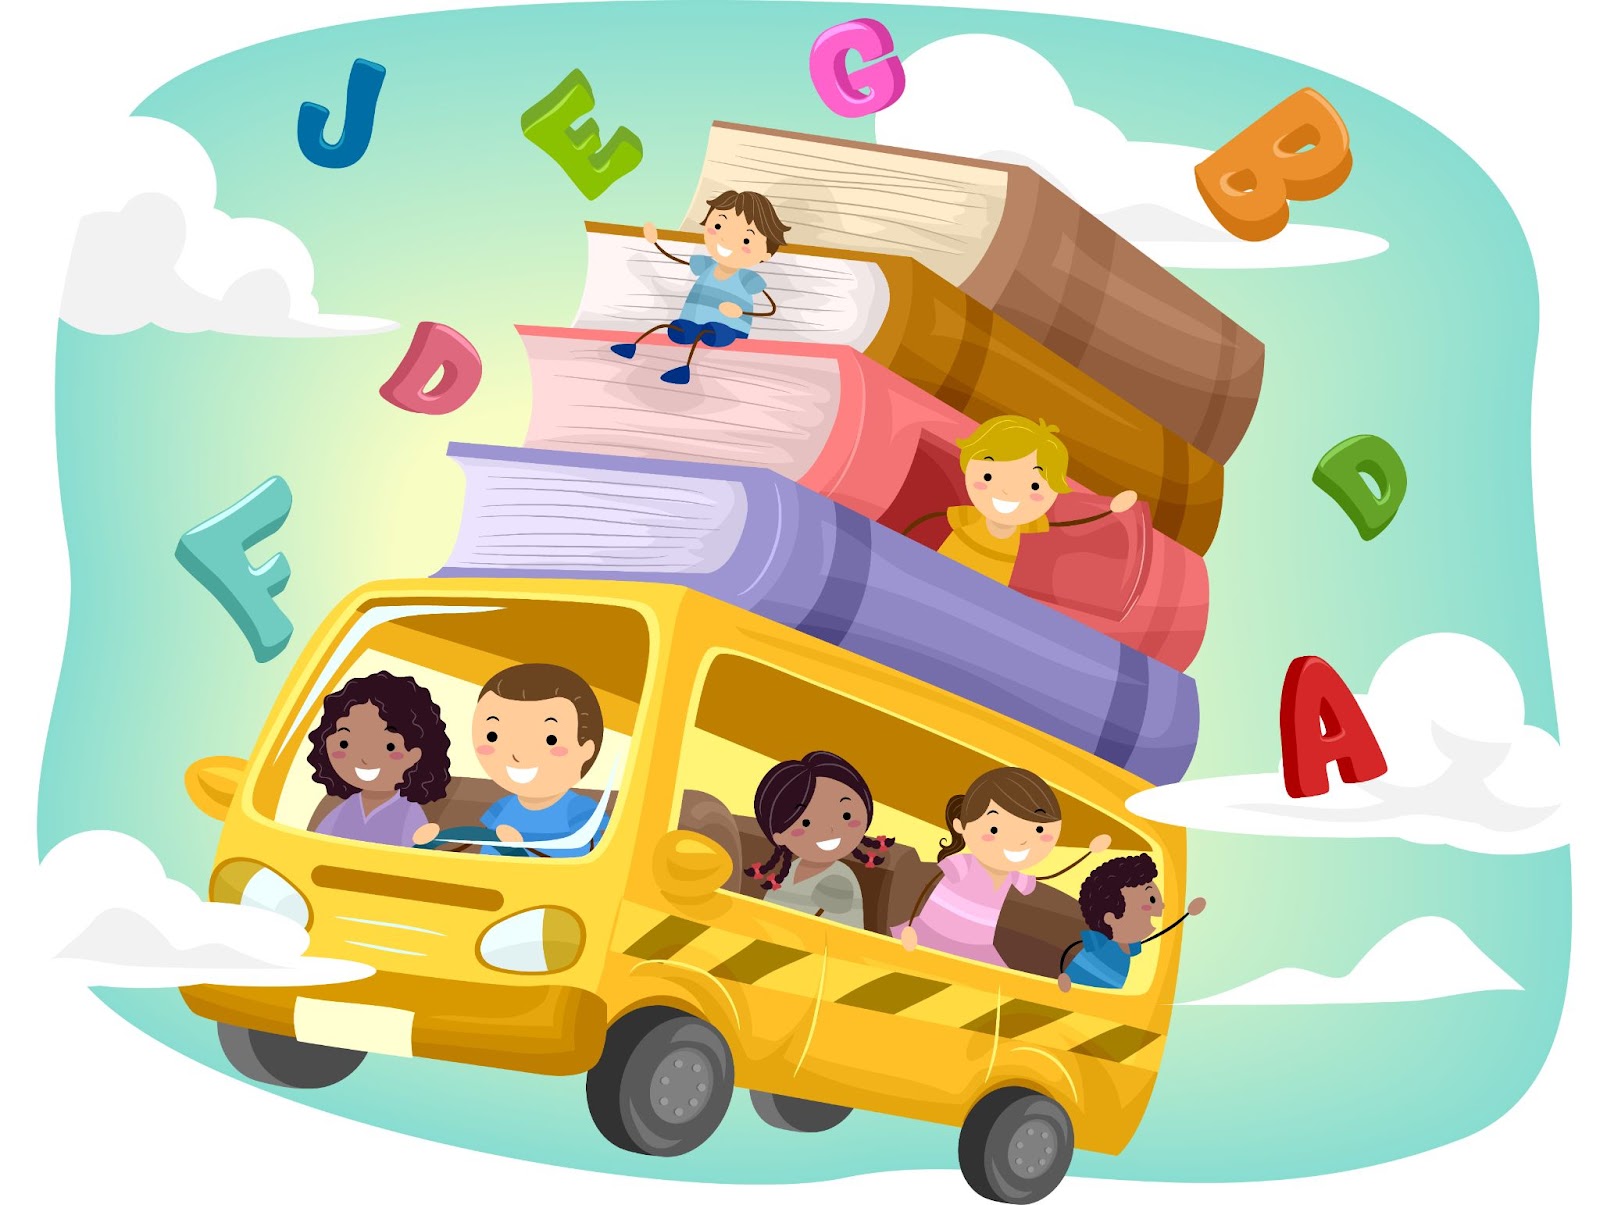 Abecedario en inglés, illustración niños en bus yendo al colegio